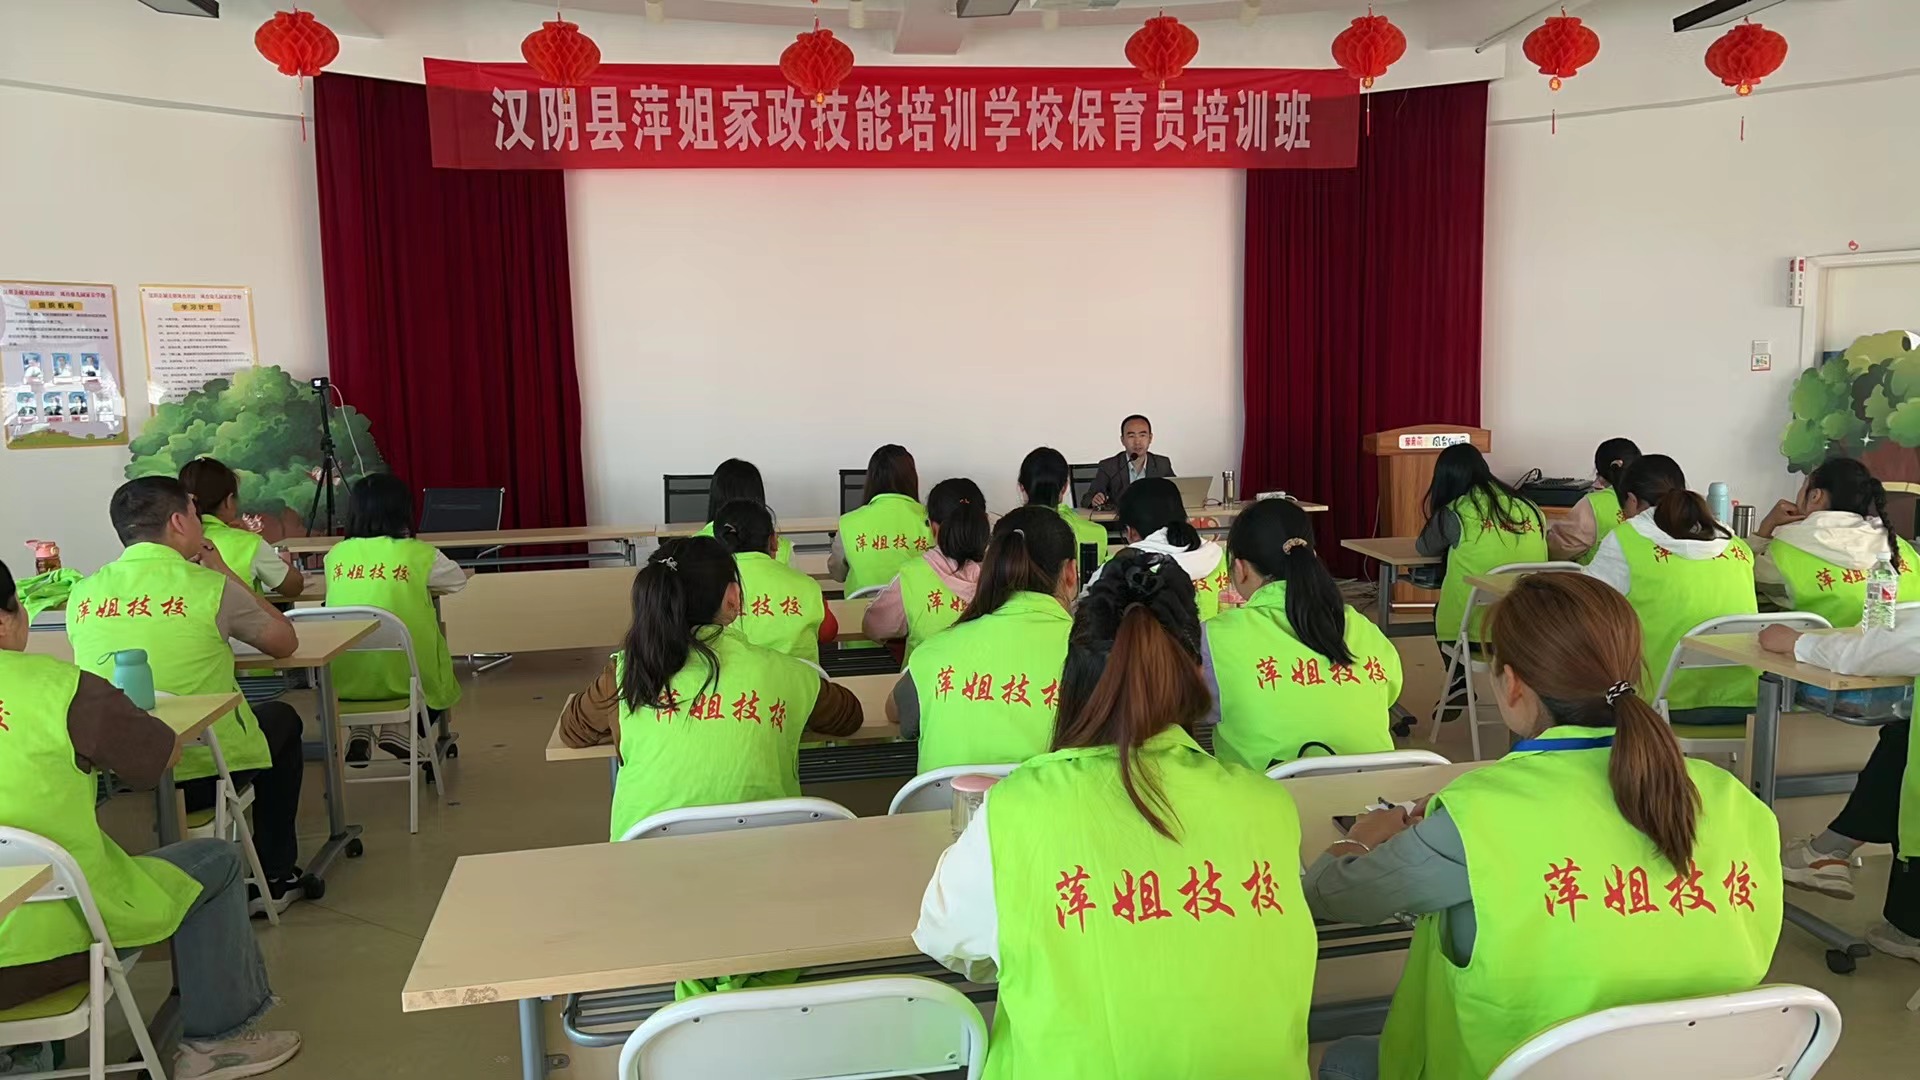 汉阴县萍姐技校保育员技能培训班在凤台幼儿园举办